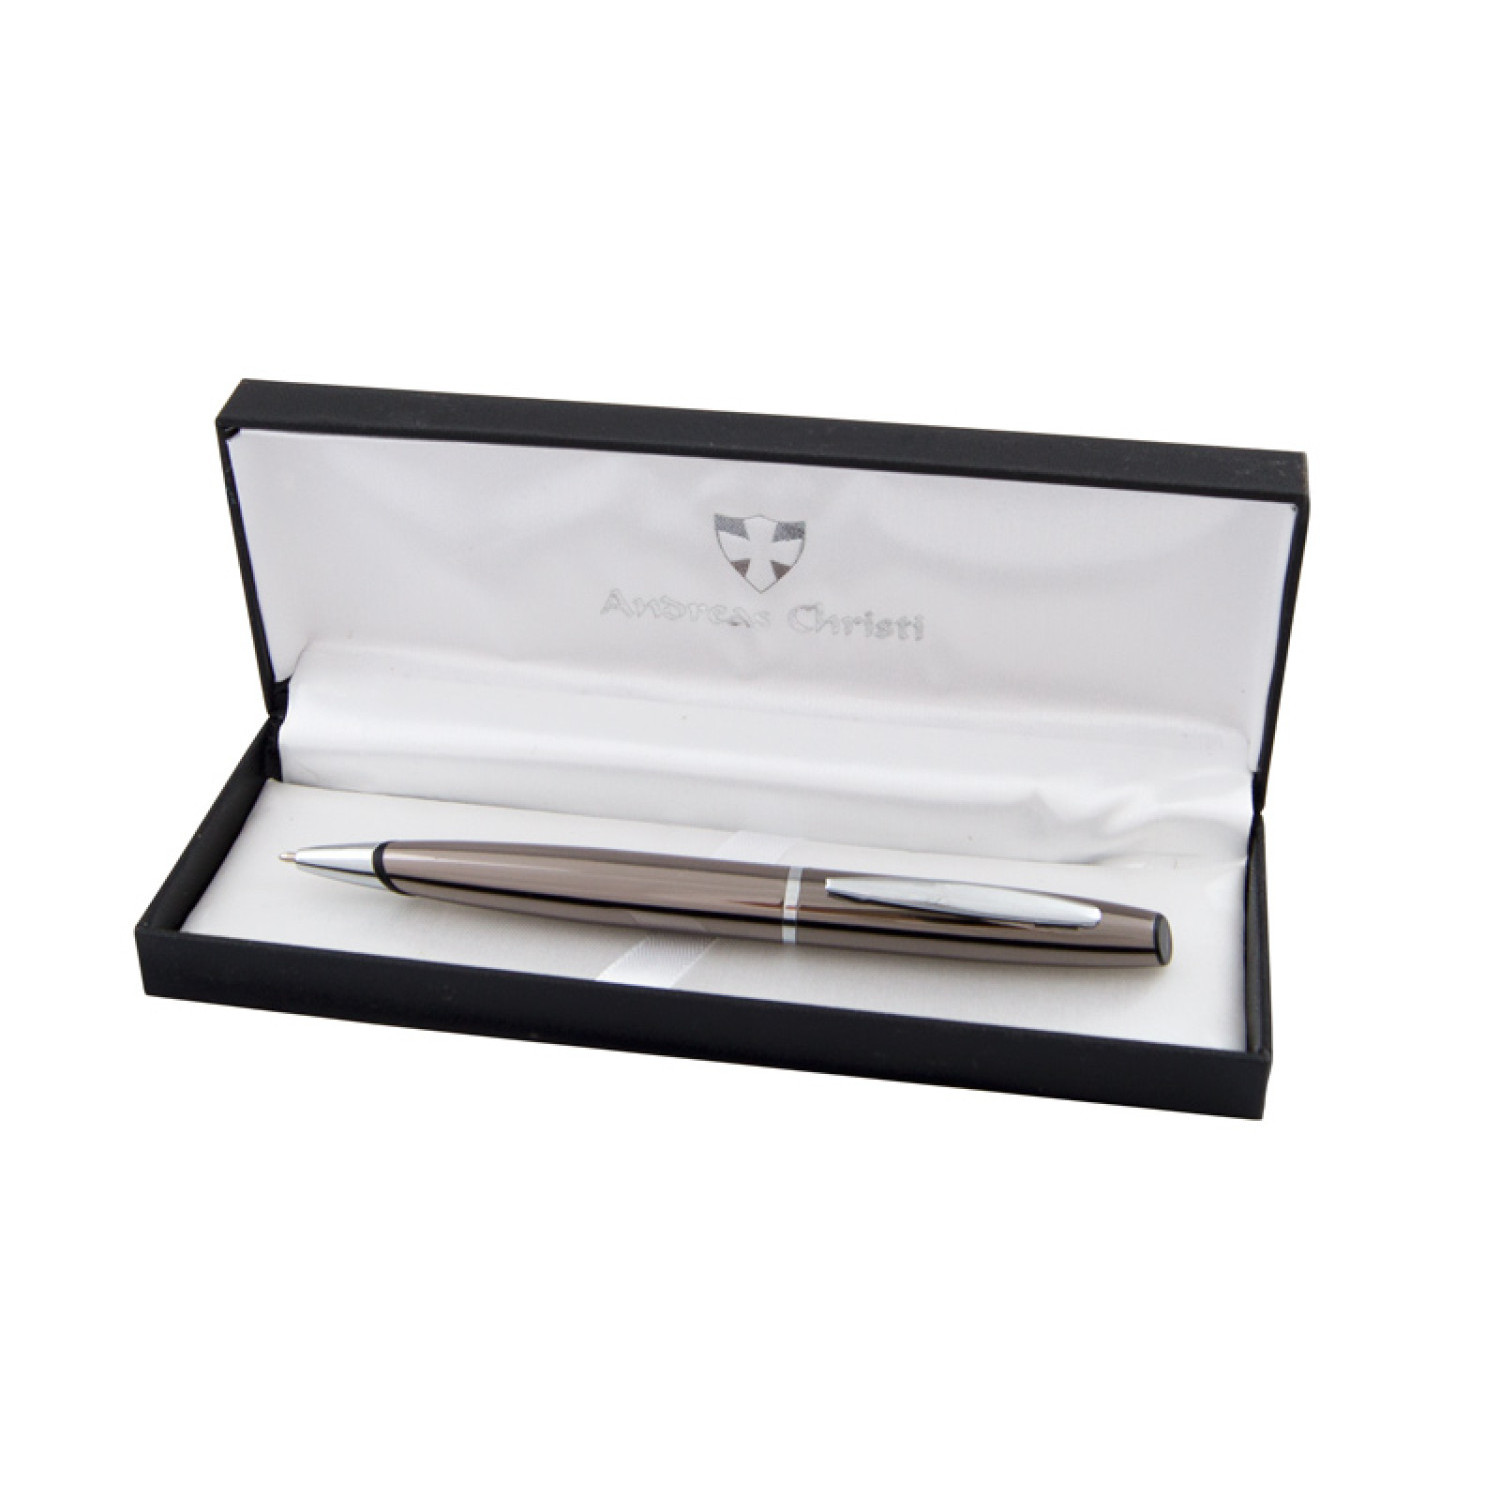 Mетална химикалка Guess 2065-Box, в кутия, сребърен